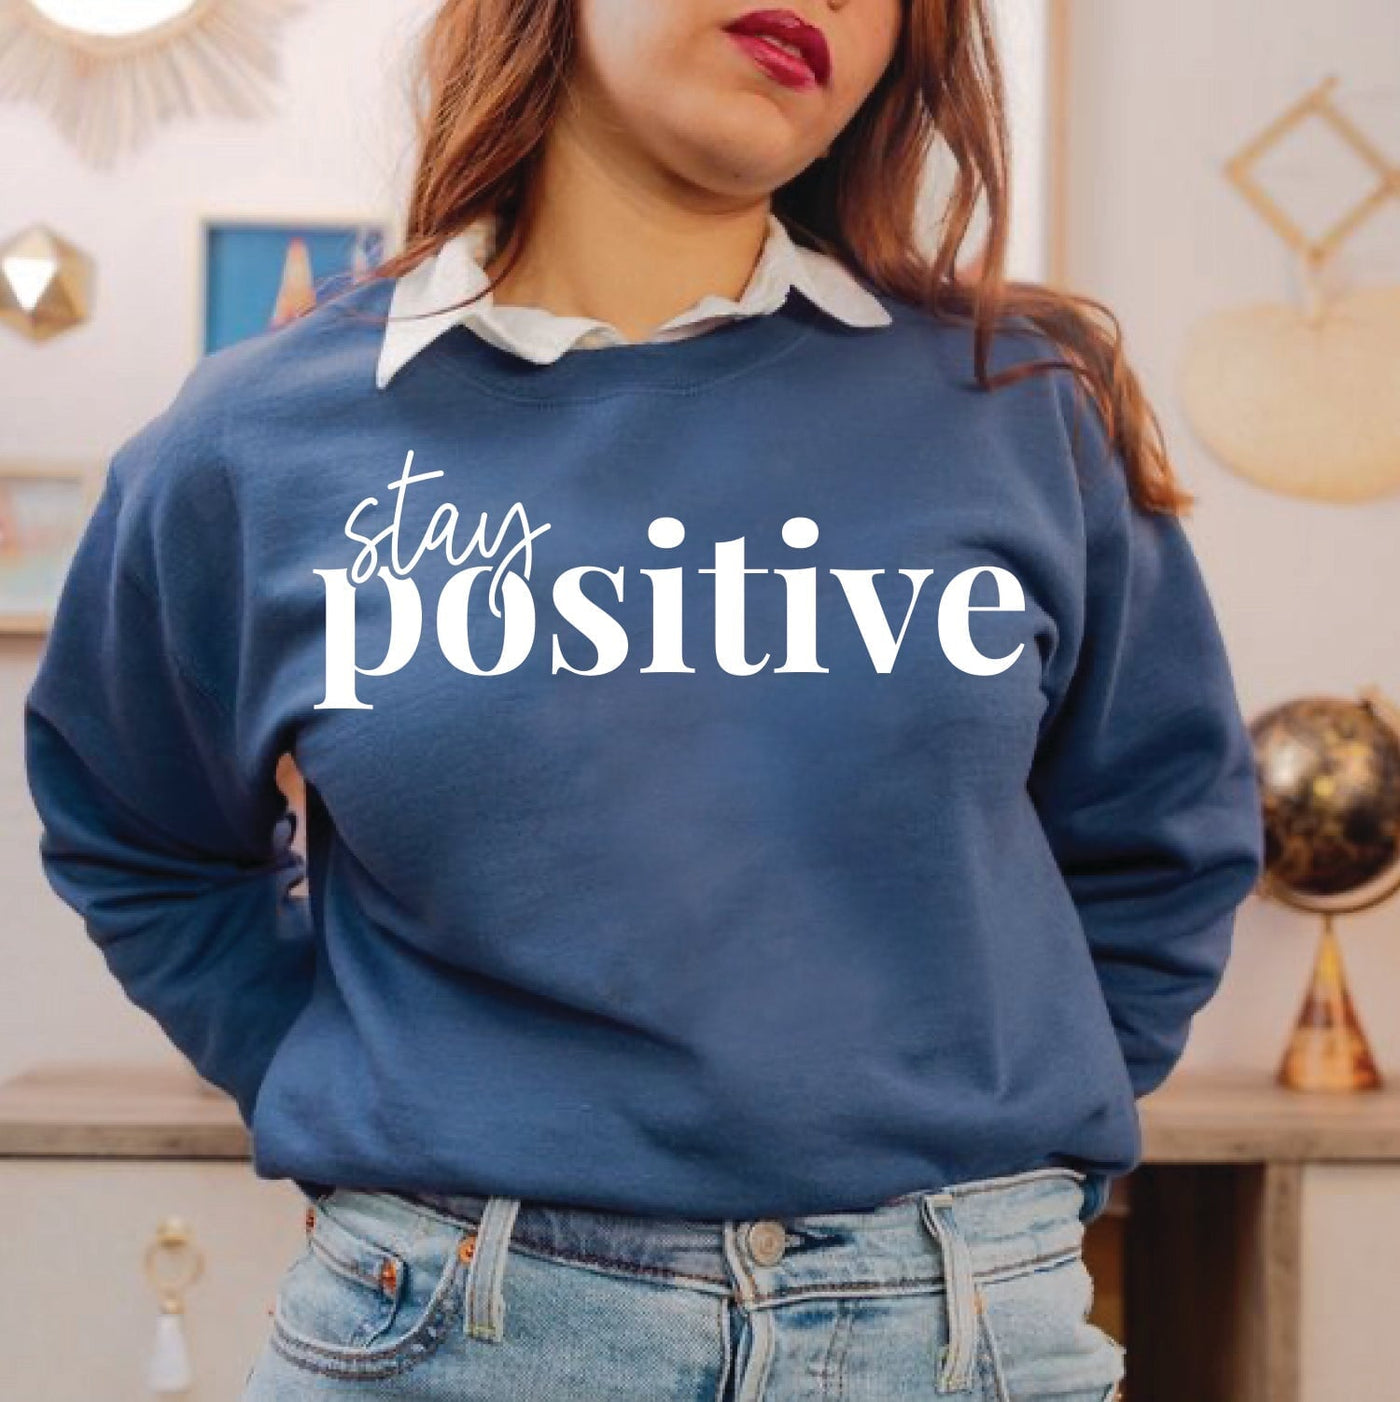 Stay Positive Note Sweatshirt Stone Blue Sweatshirt Selfawear 